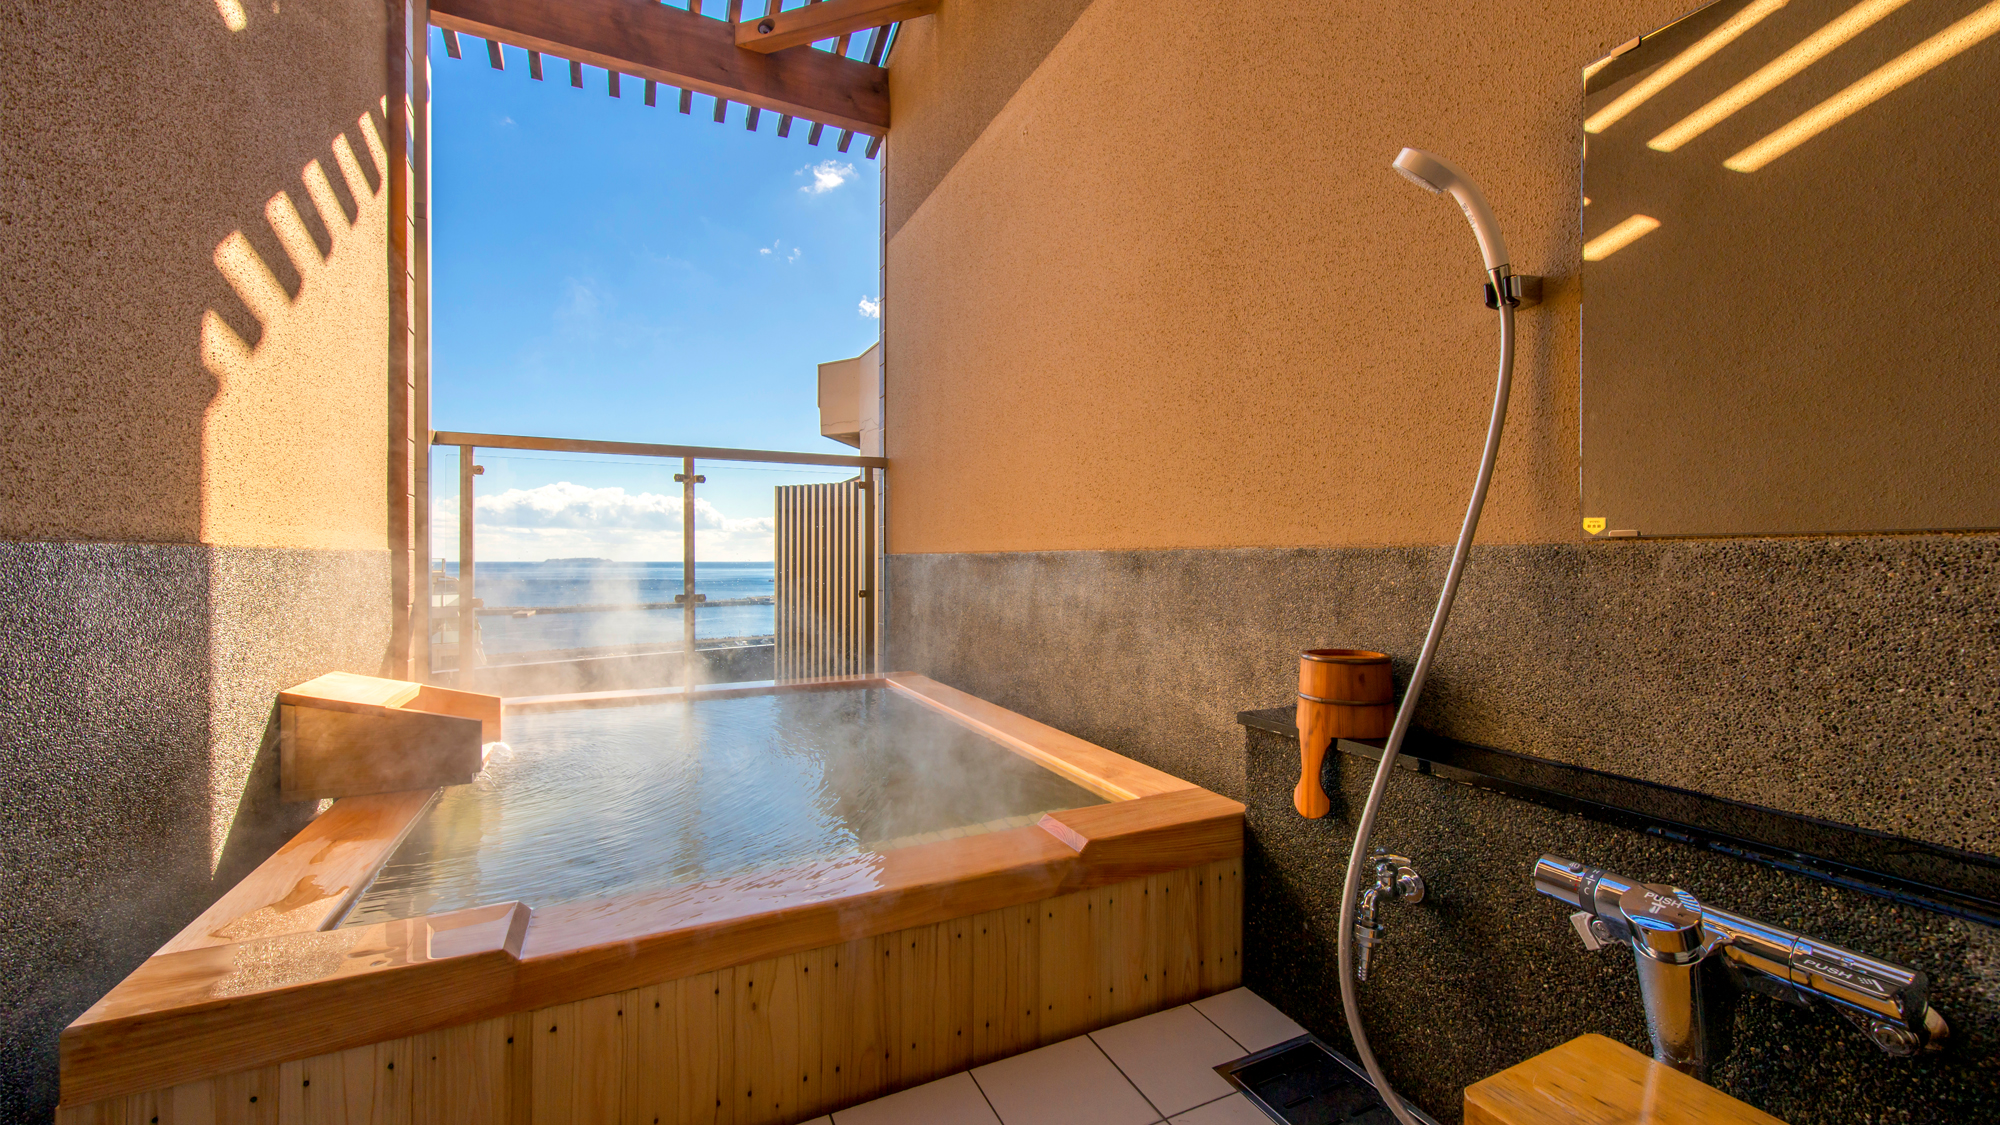 展望貸切露天風呂『初島』熱海の天然温泉を掛け流しで独占できる贅沢。